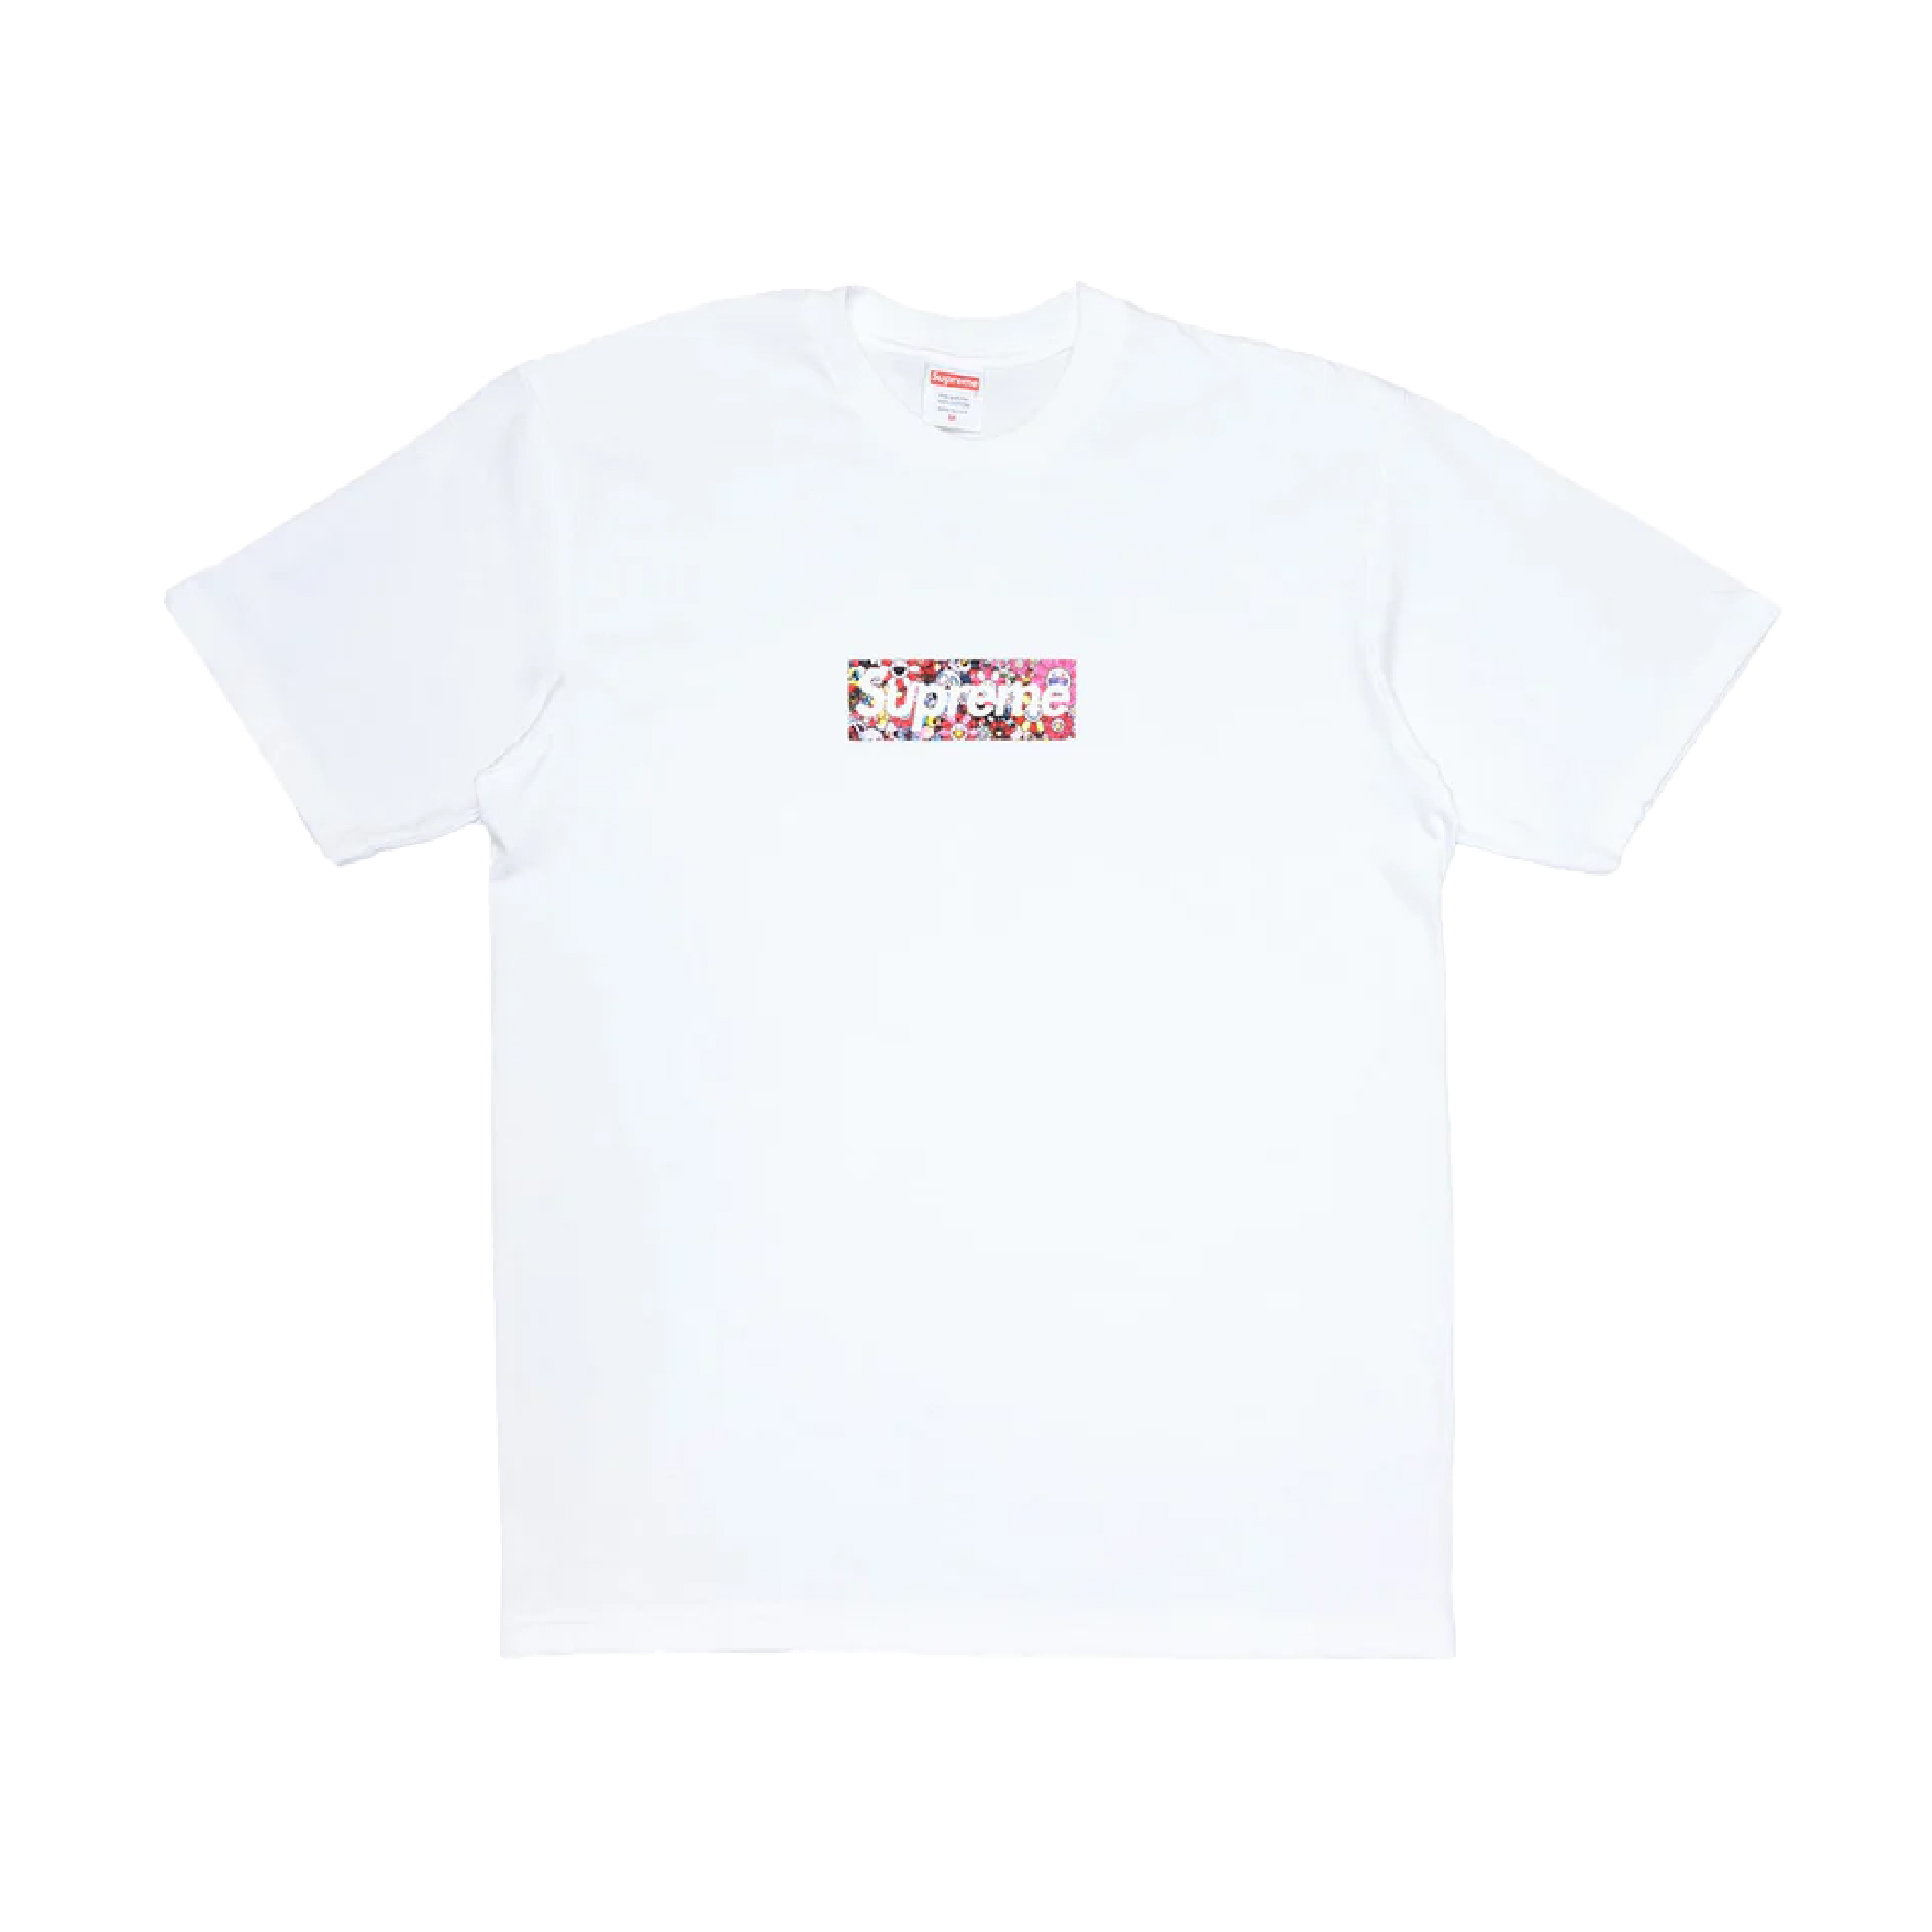 Takashi Murakami X Supreme Covid-19 T-Shirt (White)-02